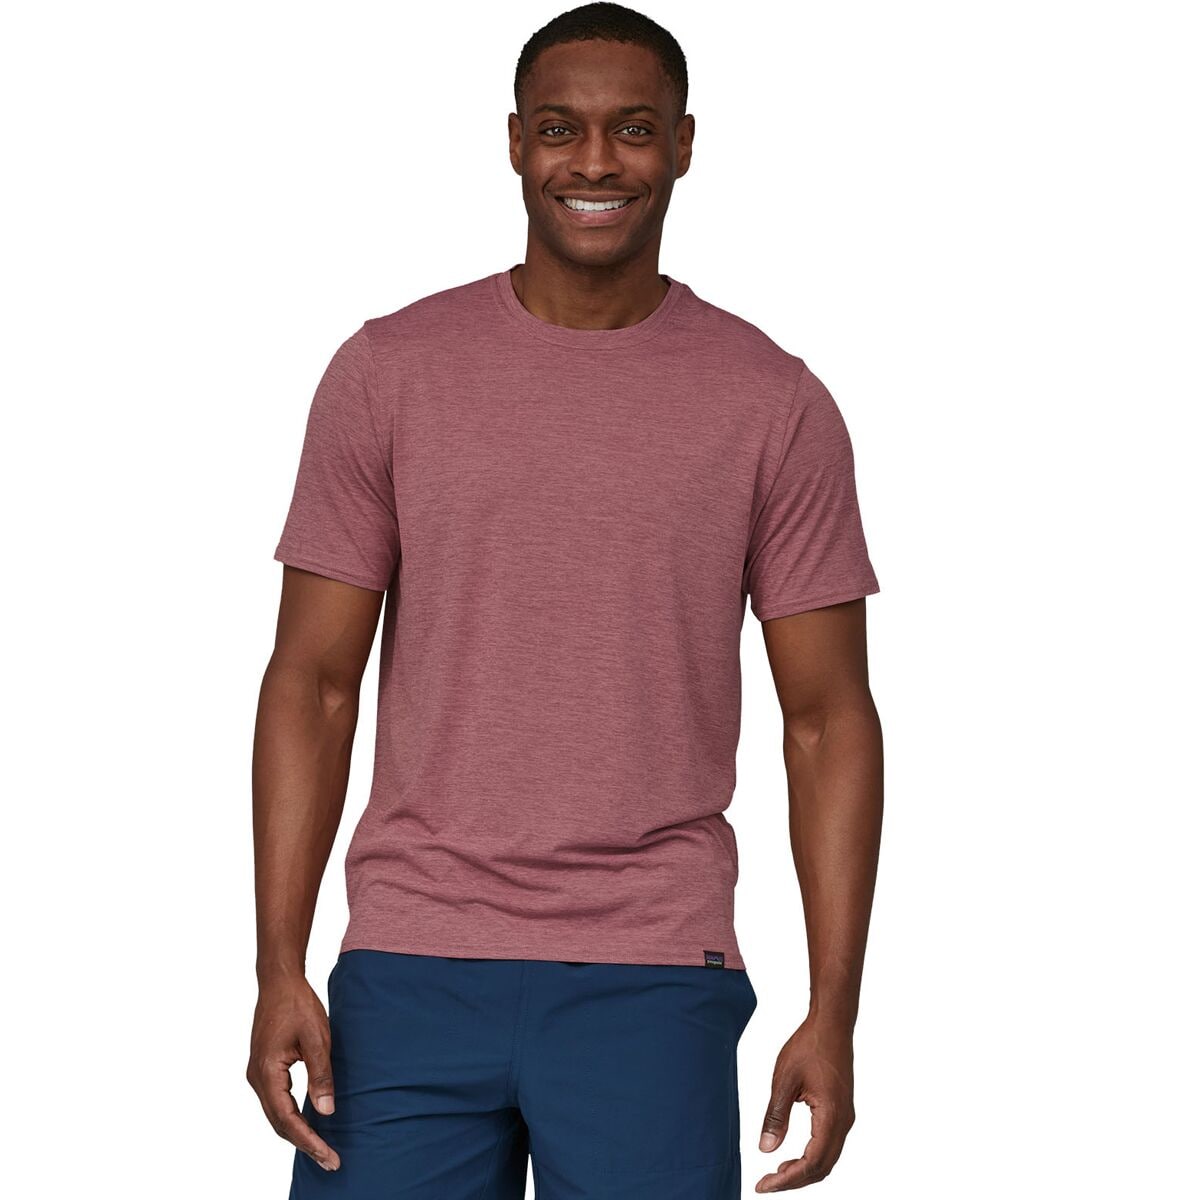 Capilene Cool Daily Short-Sleeve Shirt - Men